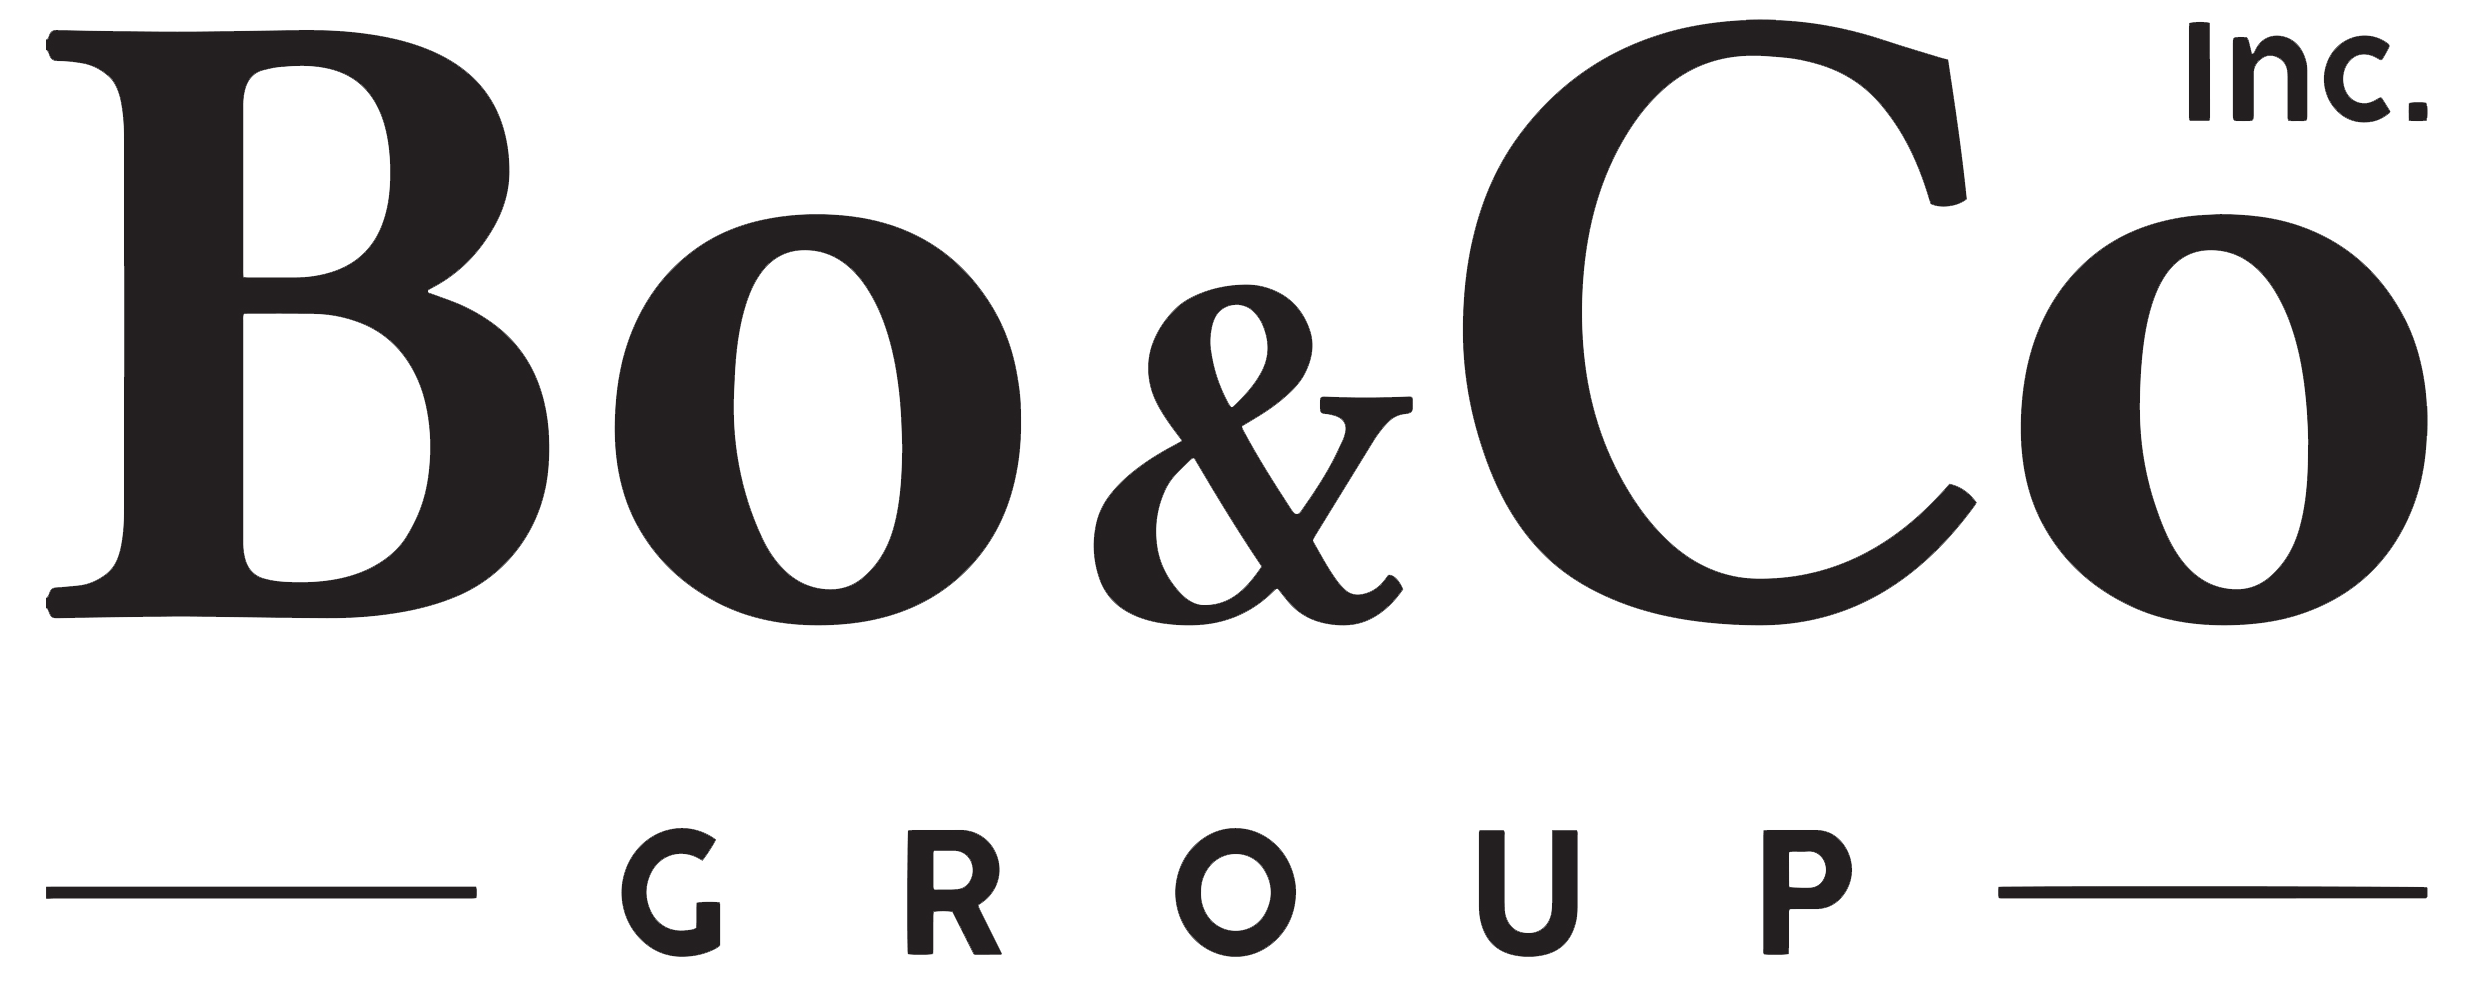 Bo & Co, Inc. Group